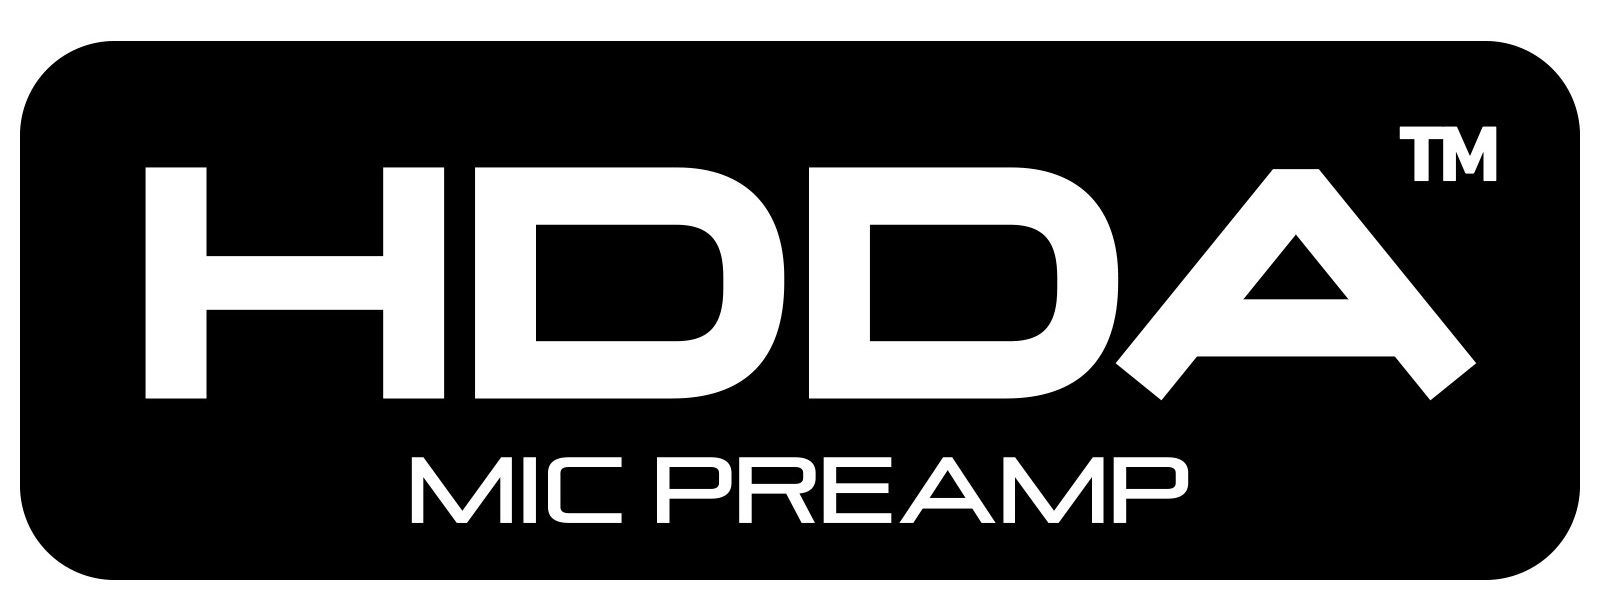 Tascam HDDA Logo